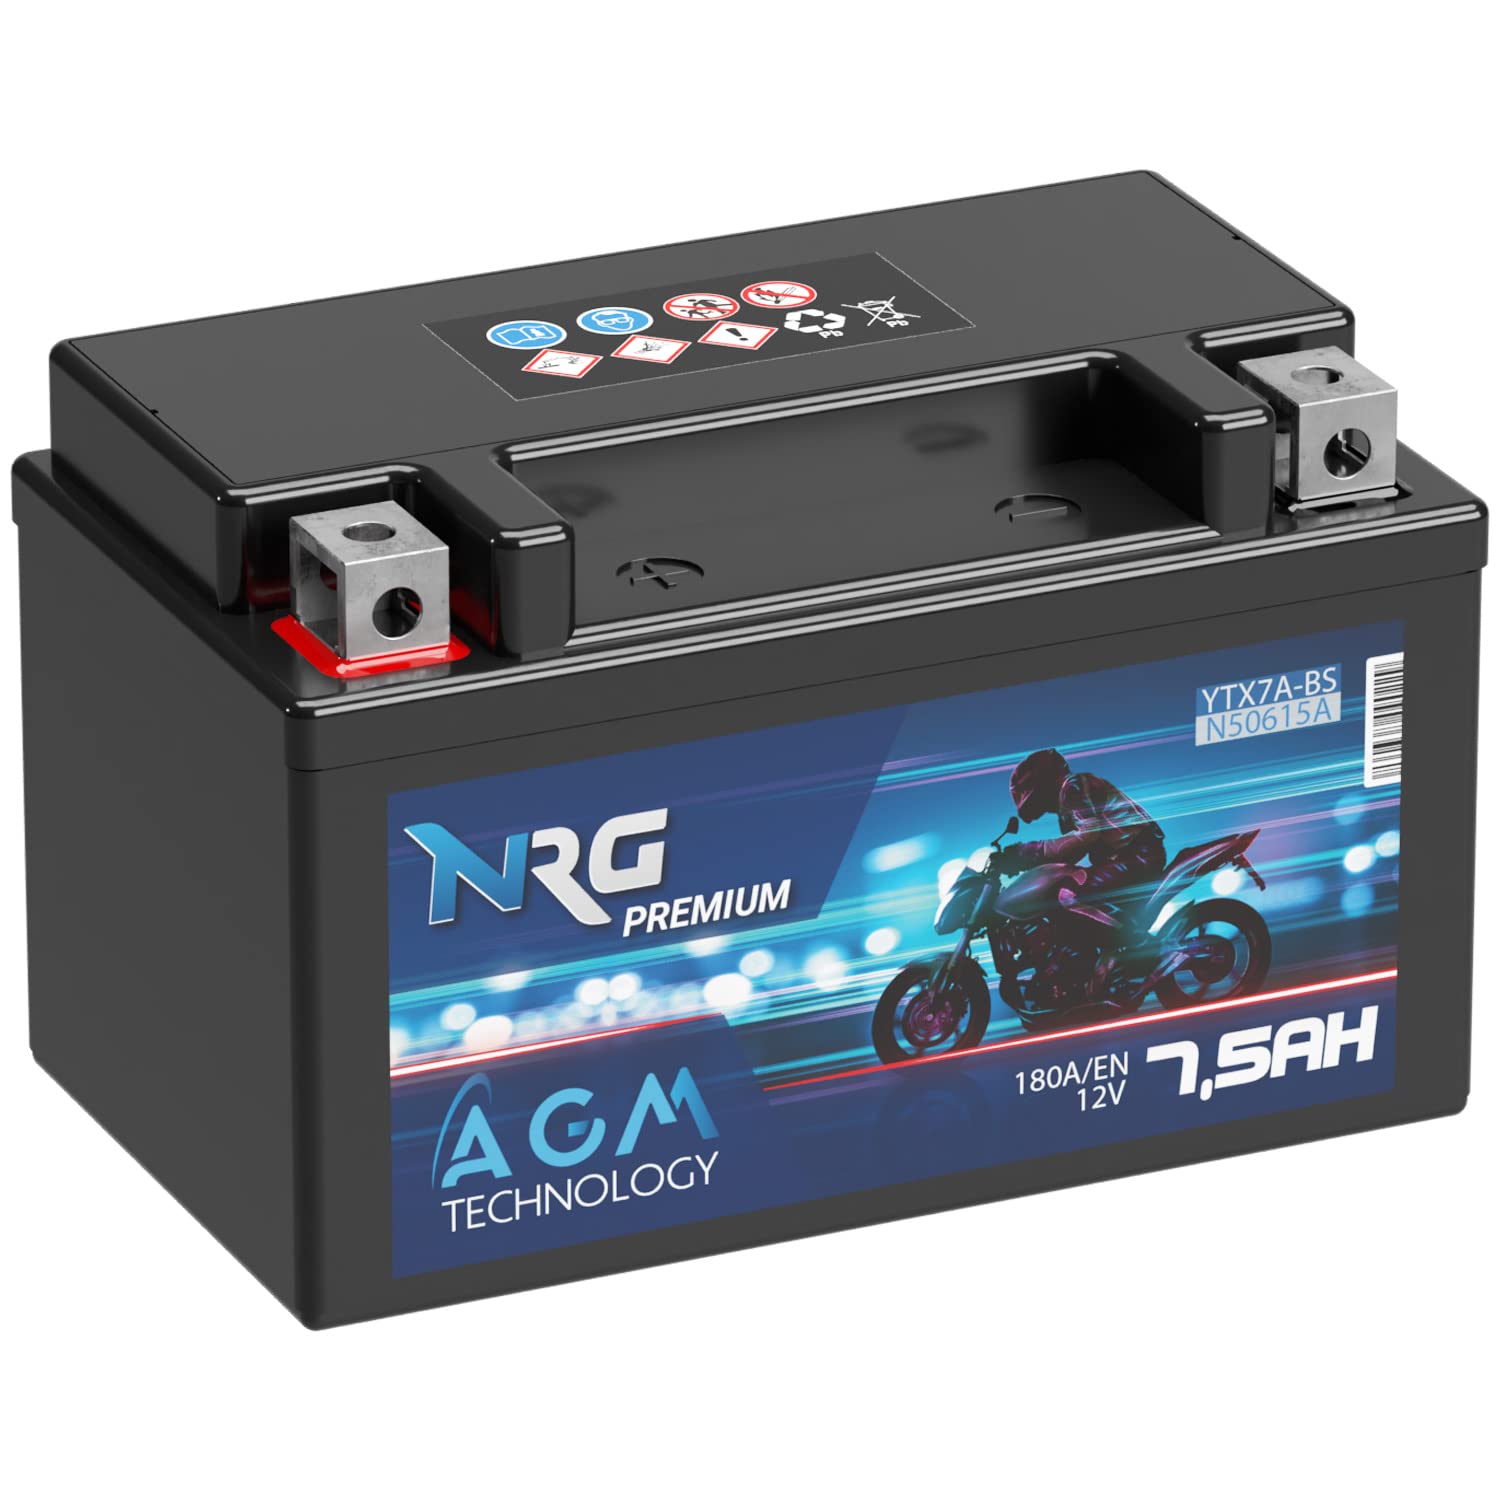 NRG Premium YTX7A-BS AGM Motorradbatterie 7,5Ah 12V 180A/EN Batterie 50615 CTX7A-BS JMTX7A-BS auslaufsicher wartungsfrei ersetzt 7Ah von NRG PREMIUM